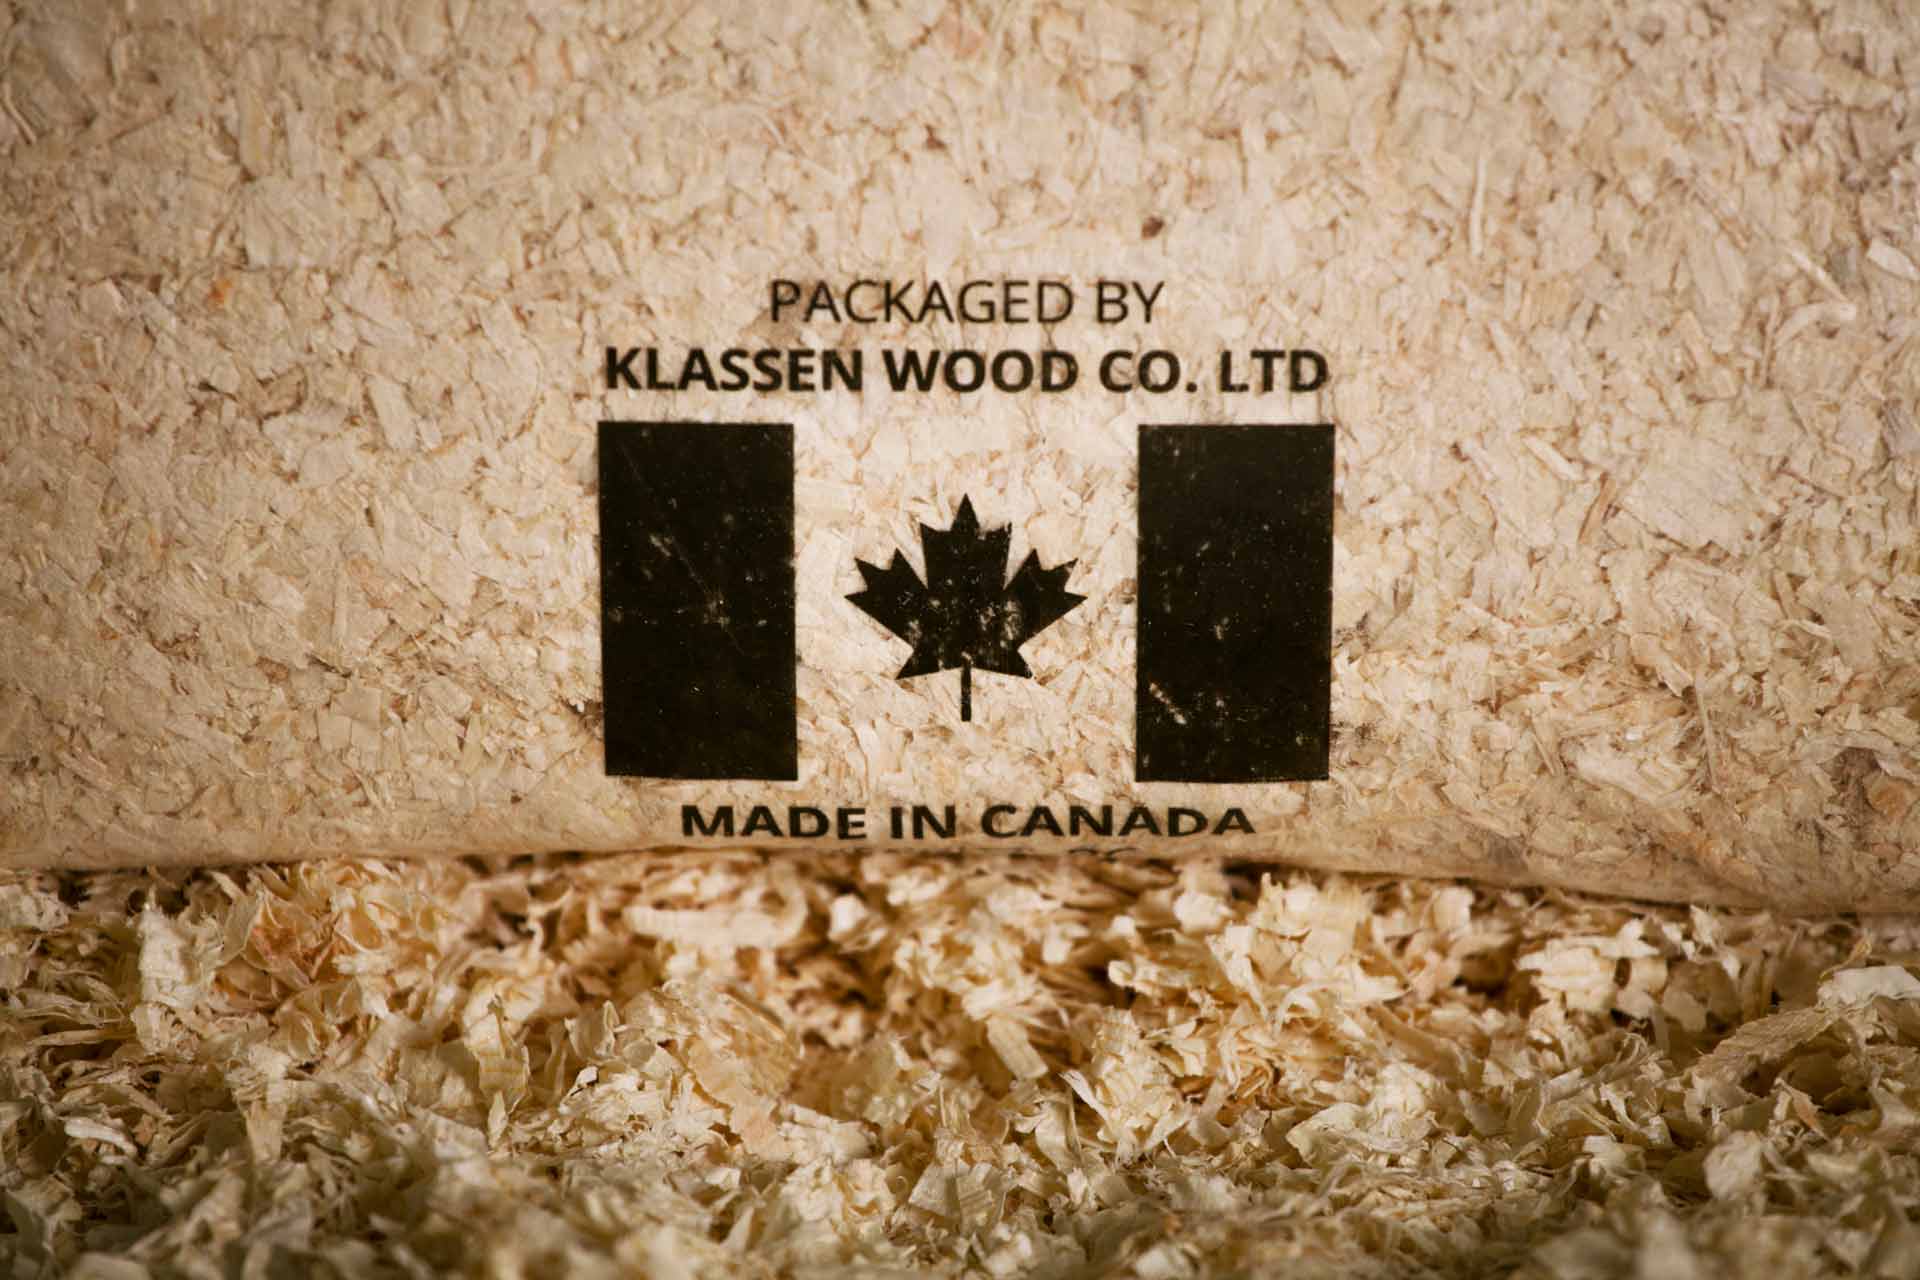 Klassen Wood Co. Ltd Made in Canada Logo